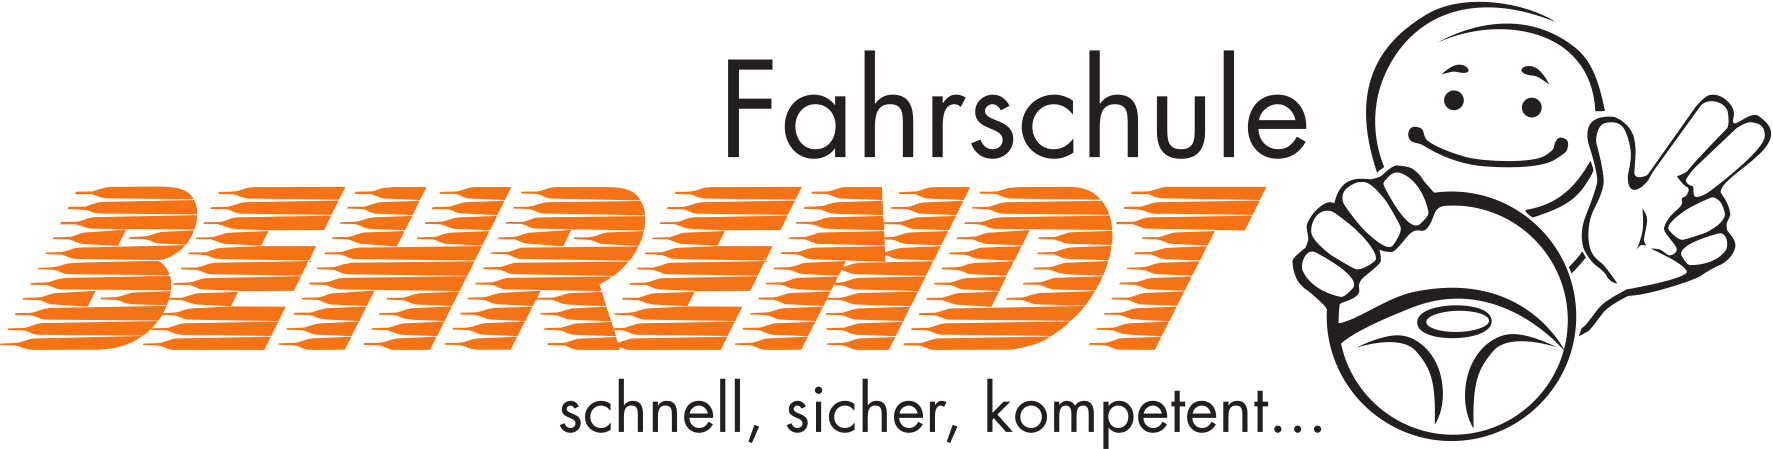 Logo Fahrschule Behrendt